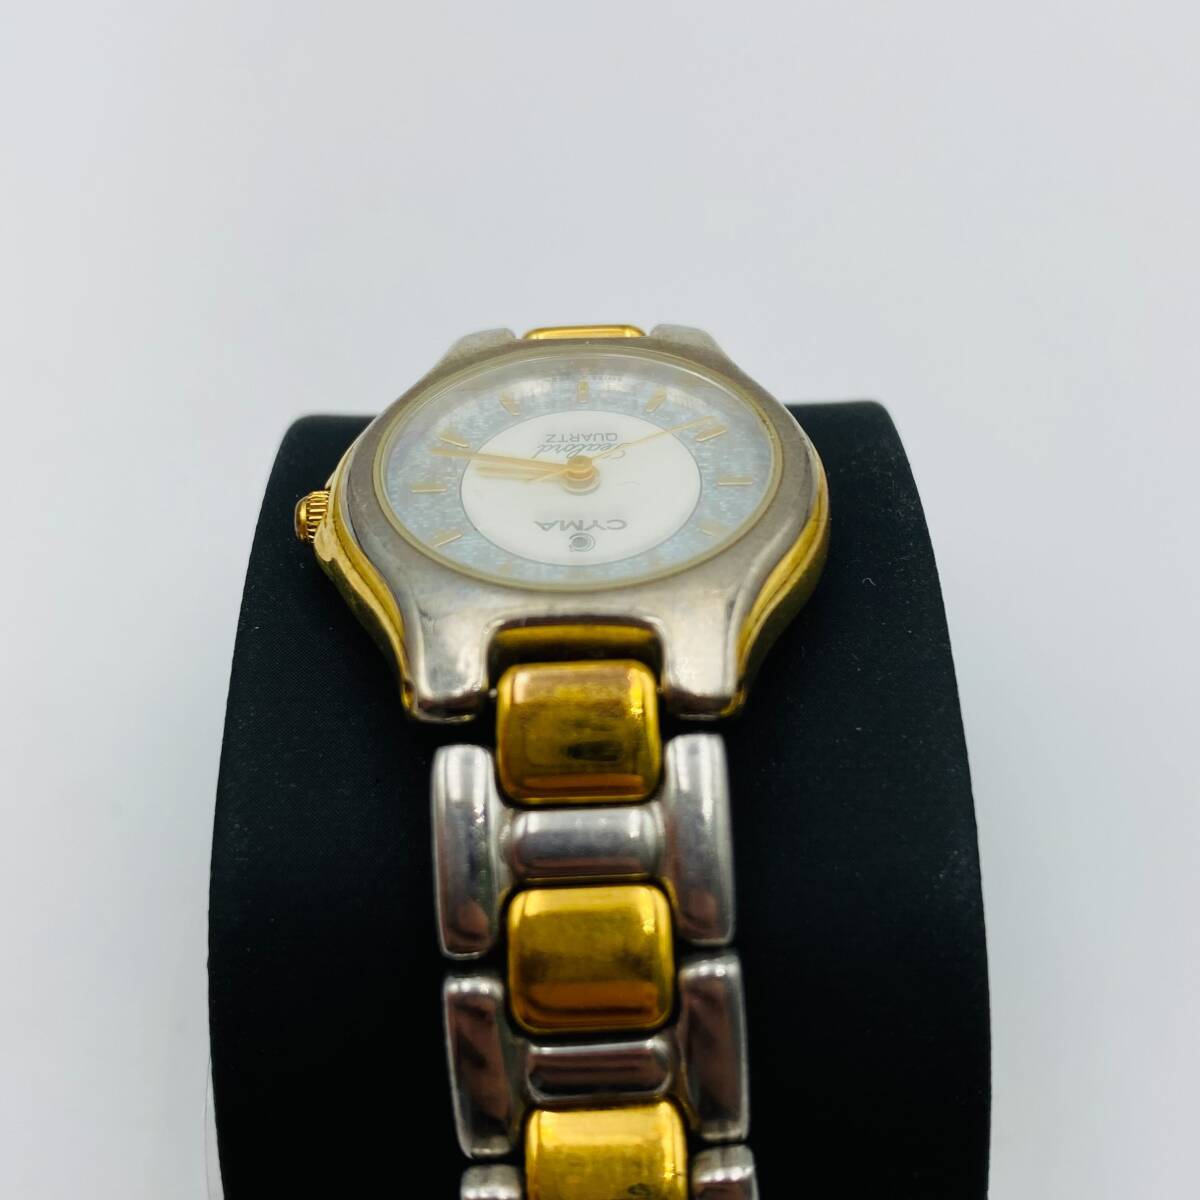 ♪A77352:シーマ CYMA シーロード Sealord 414 ラウンド ゴールド コンビ ホワイト文字盤 クォーツ レディース腕時計 ジャンクの画像5